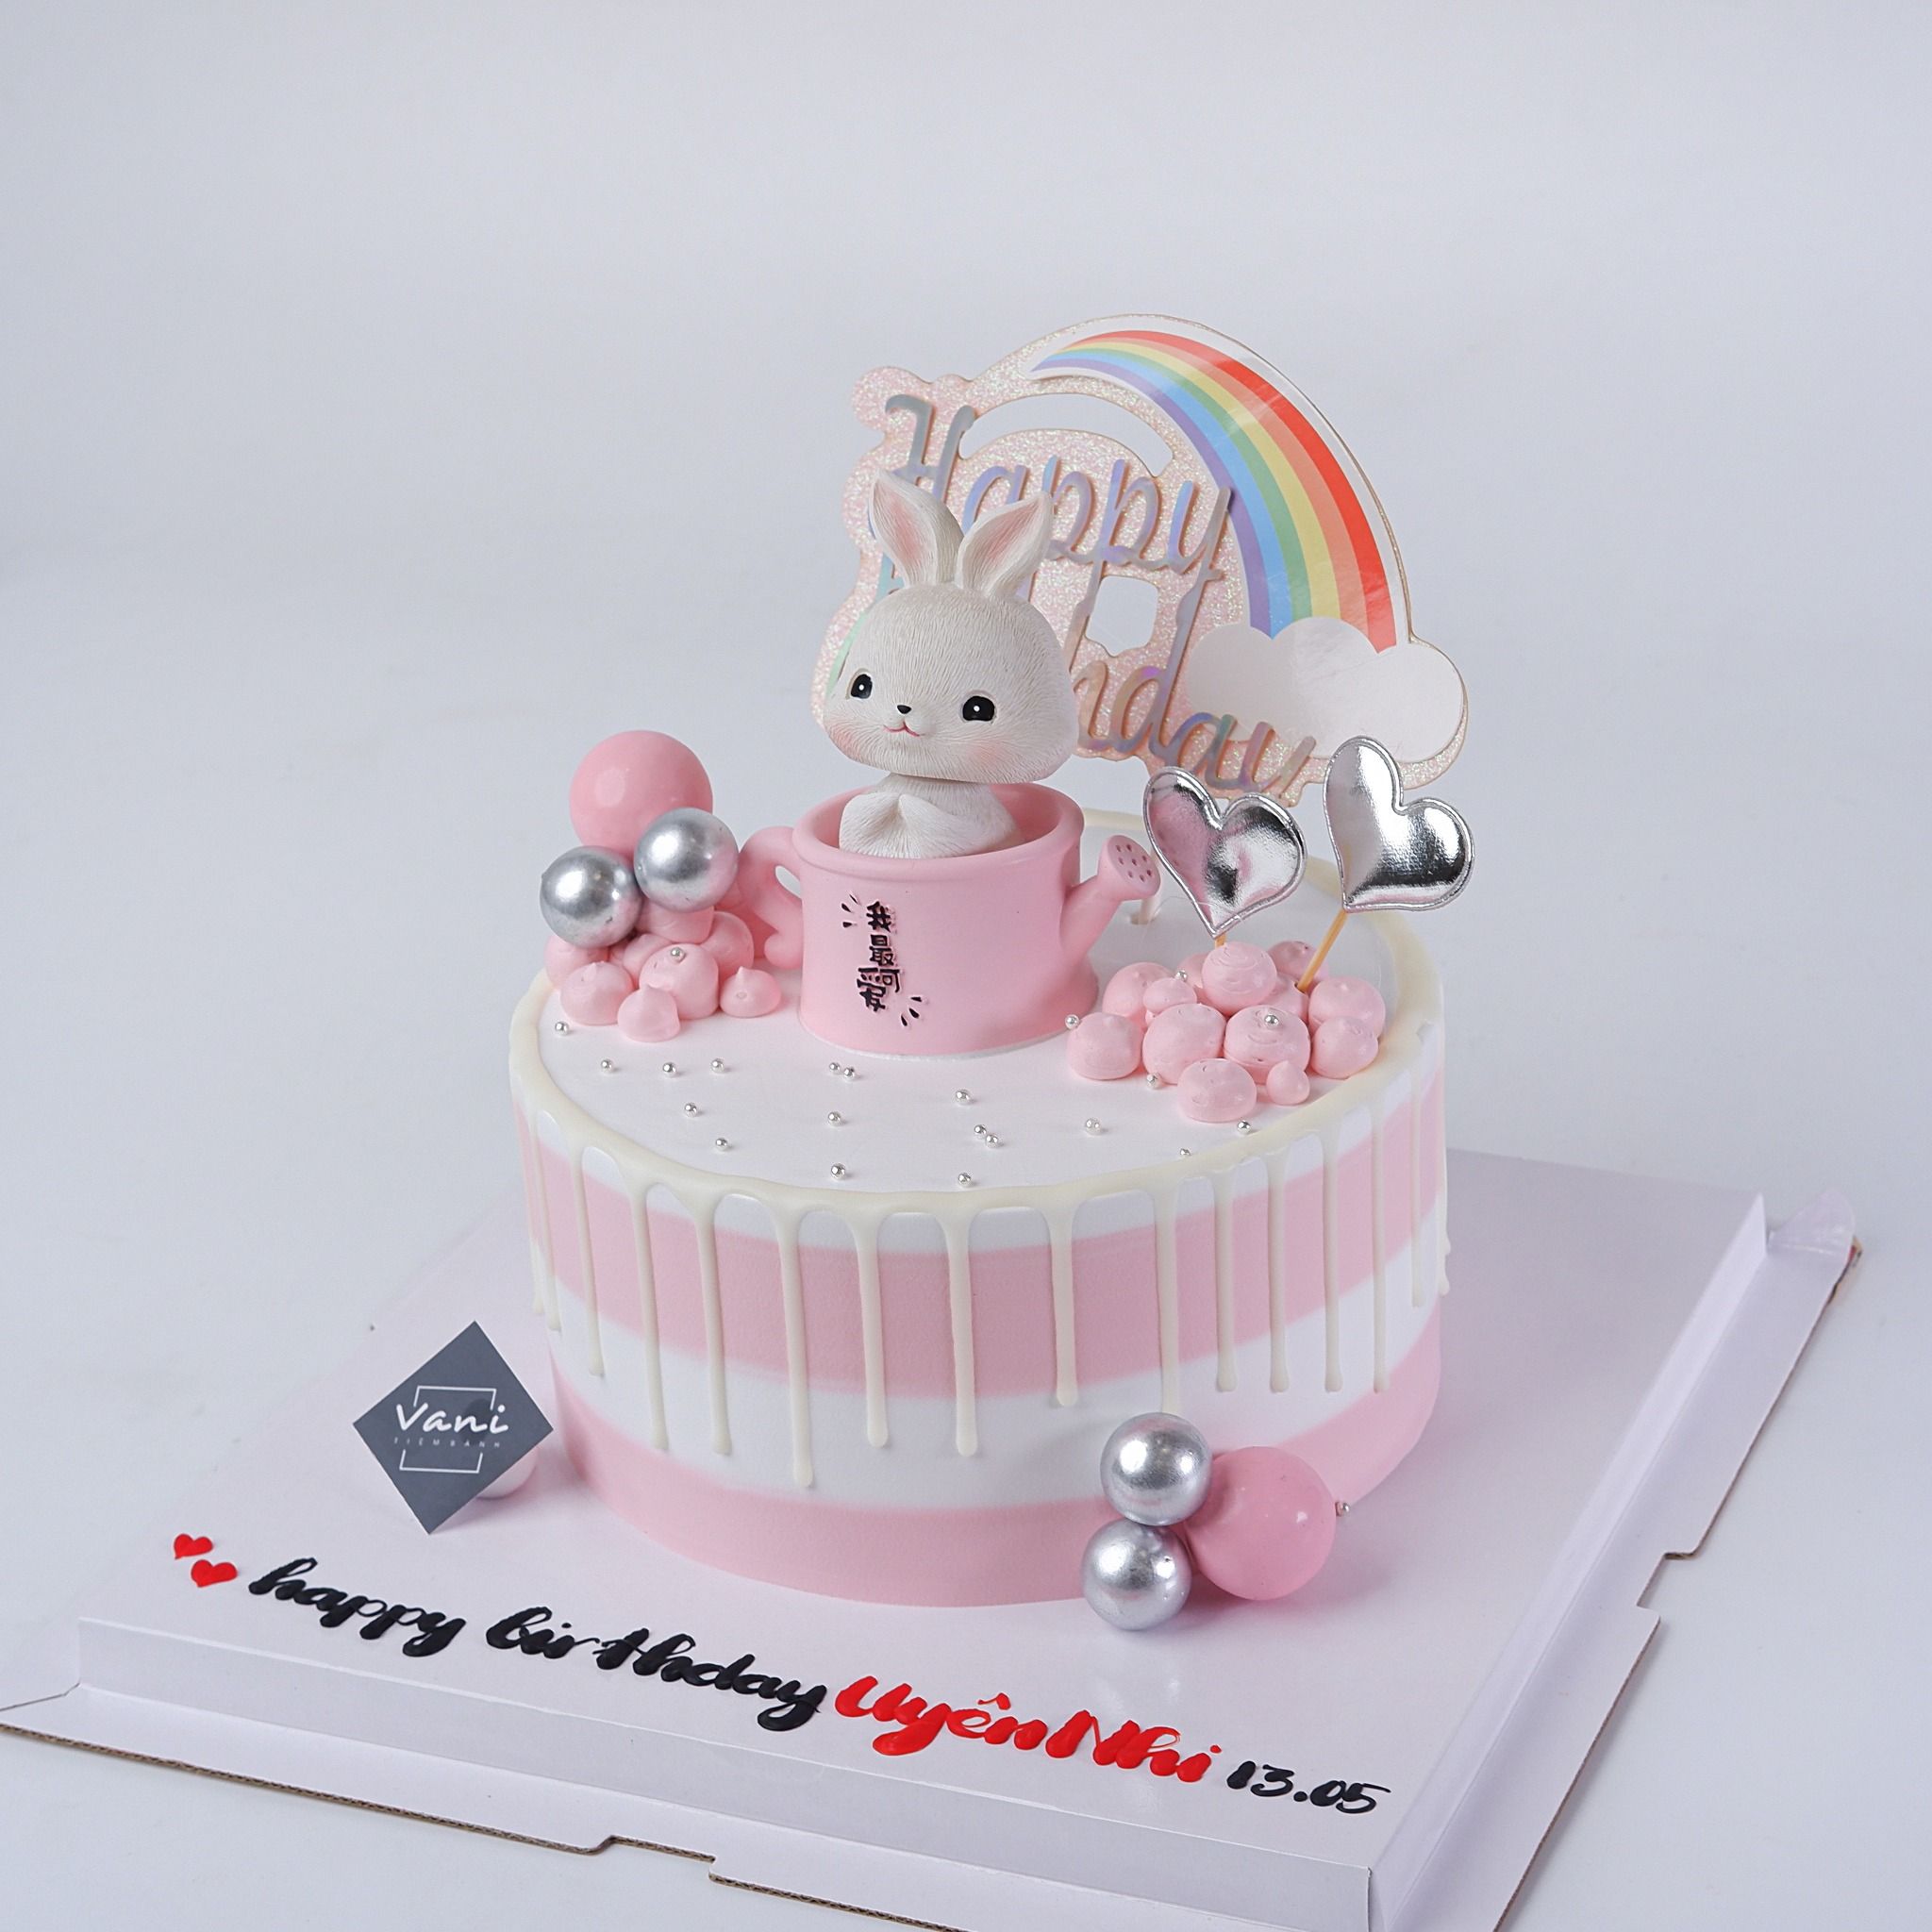 Bánh gato bánh kem sinh nhật Lý Nhân Hà Nam  Home  Facebook